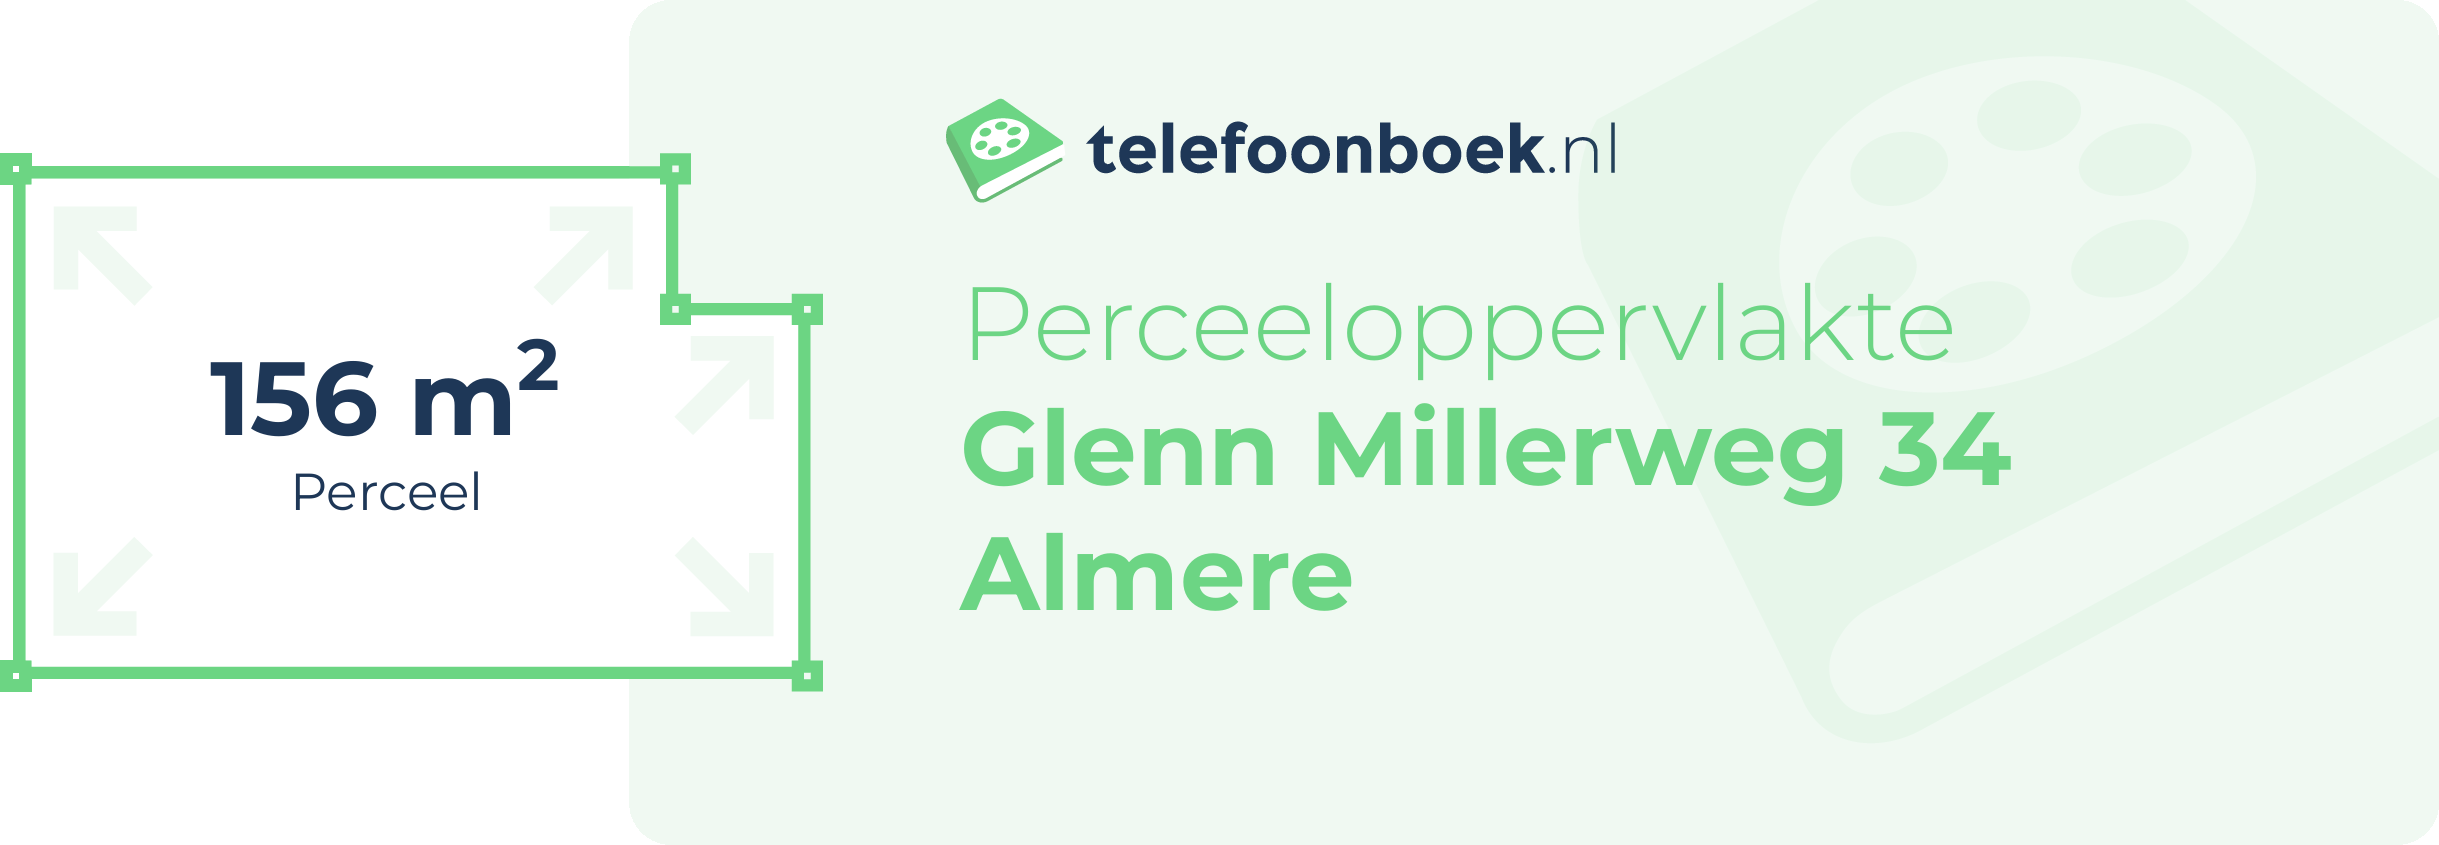 Perceeloppervlakte Glenn Millerweg 34 Almere